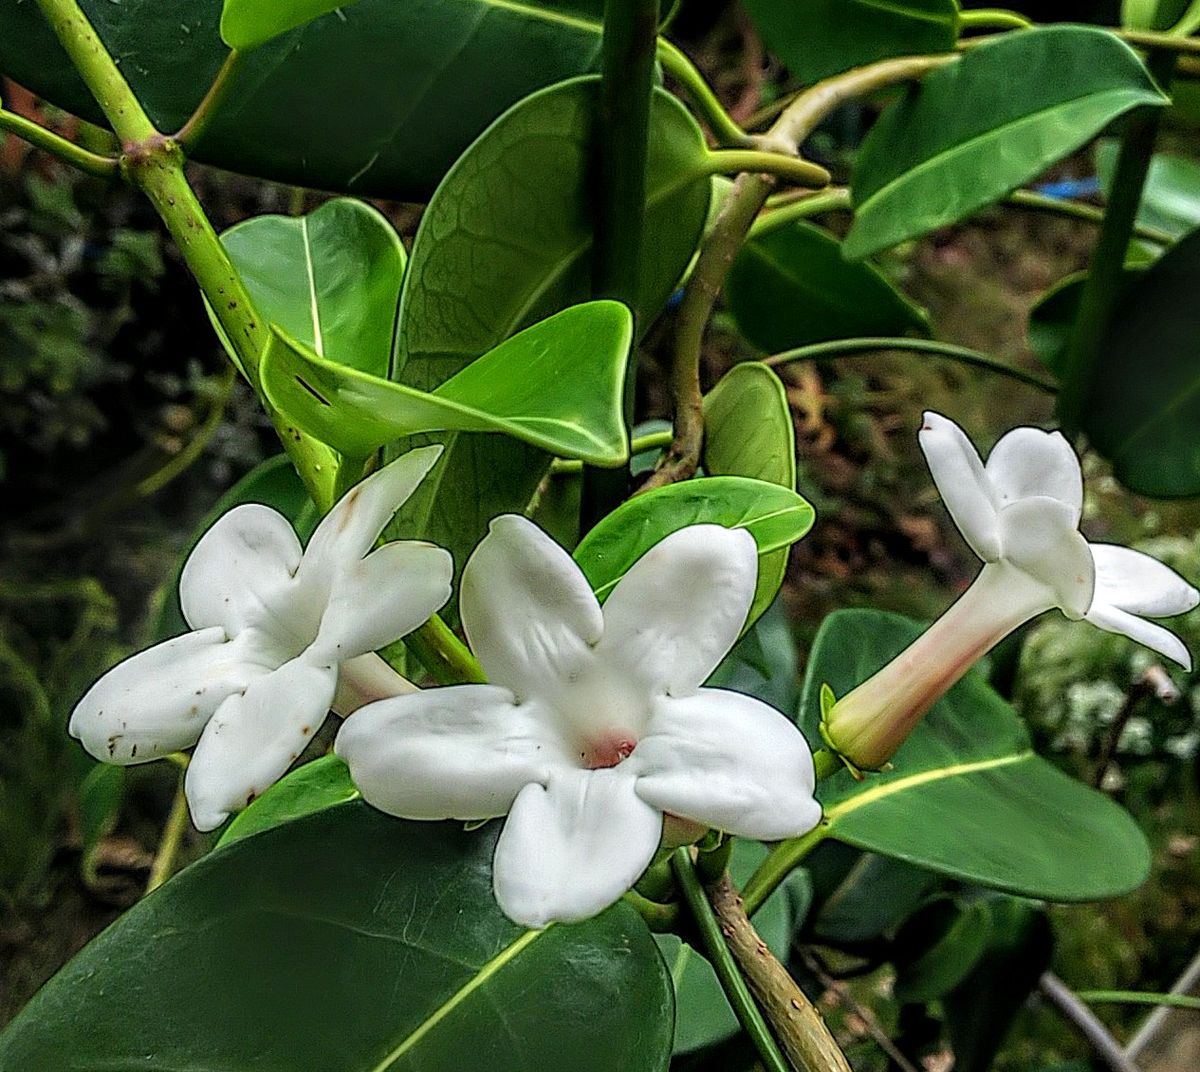 マダガスカルジャスミンの白い花🥀 今年の最後の花